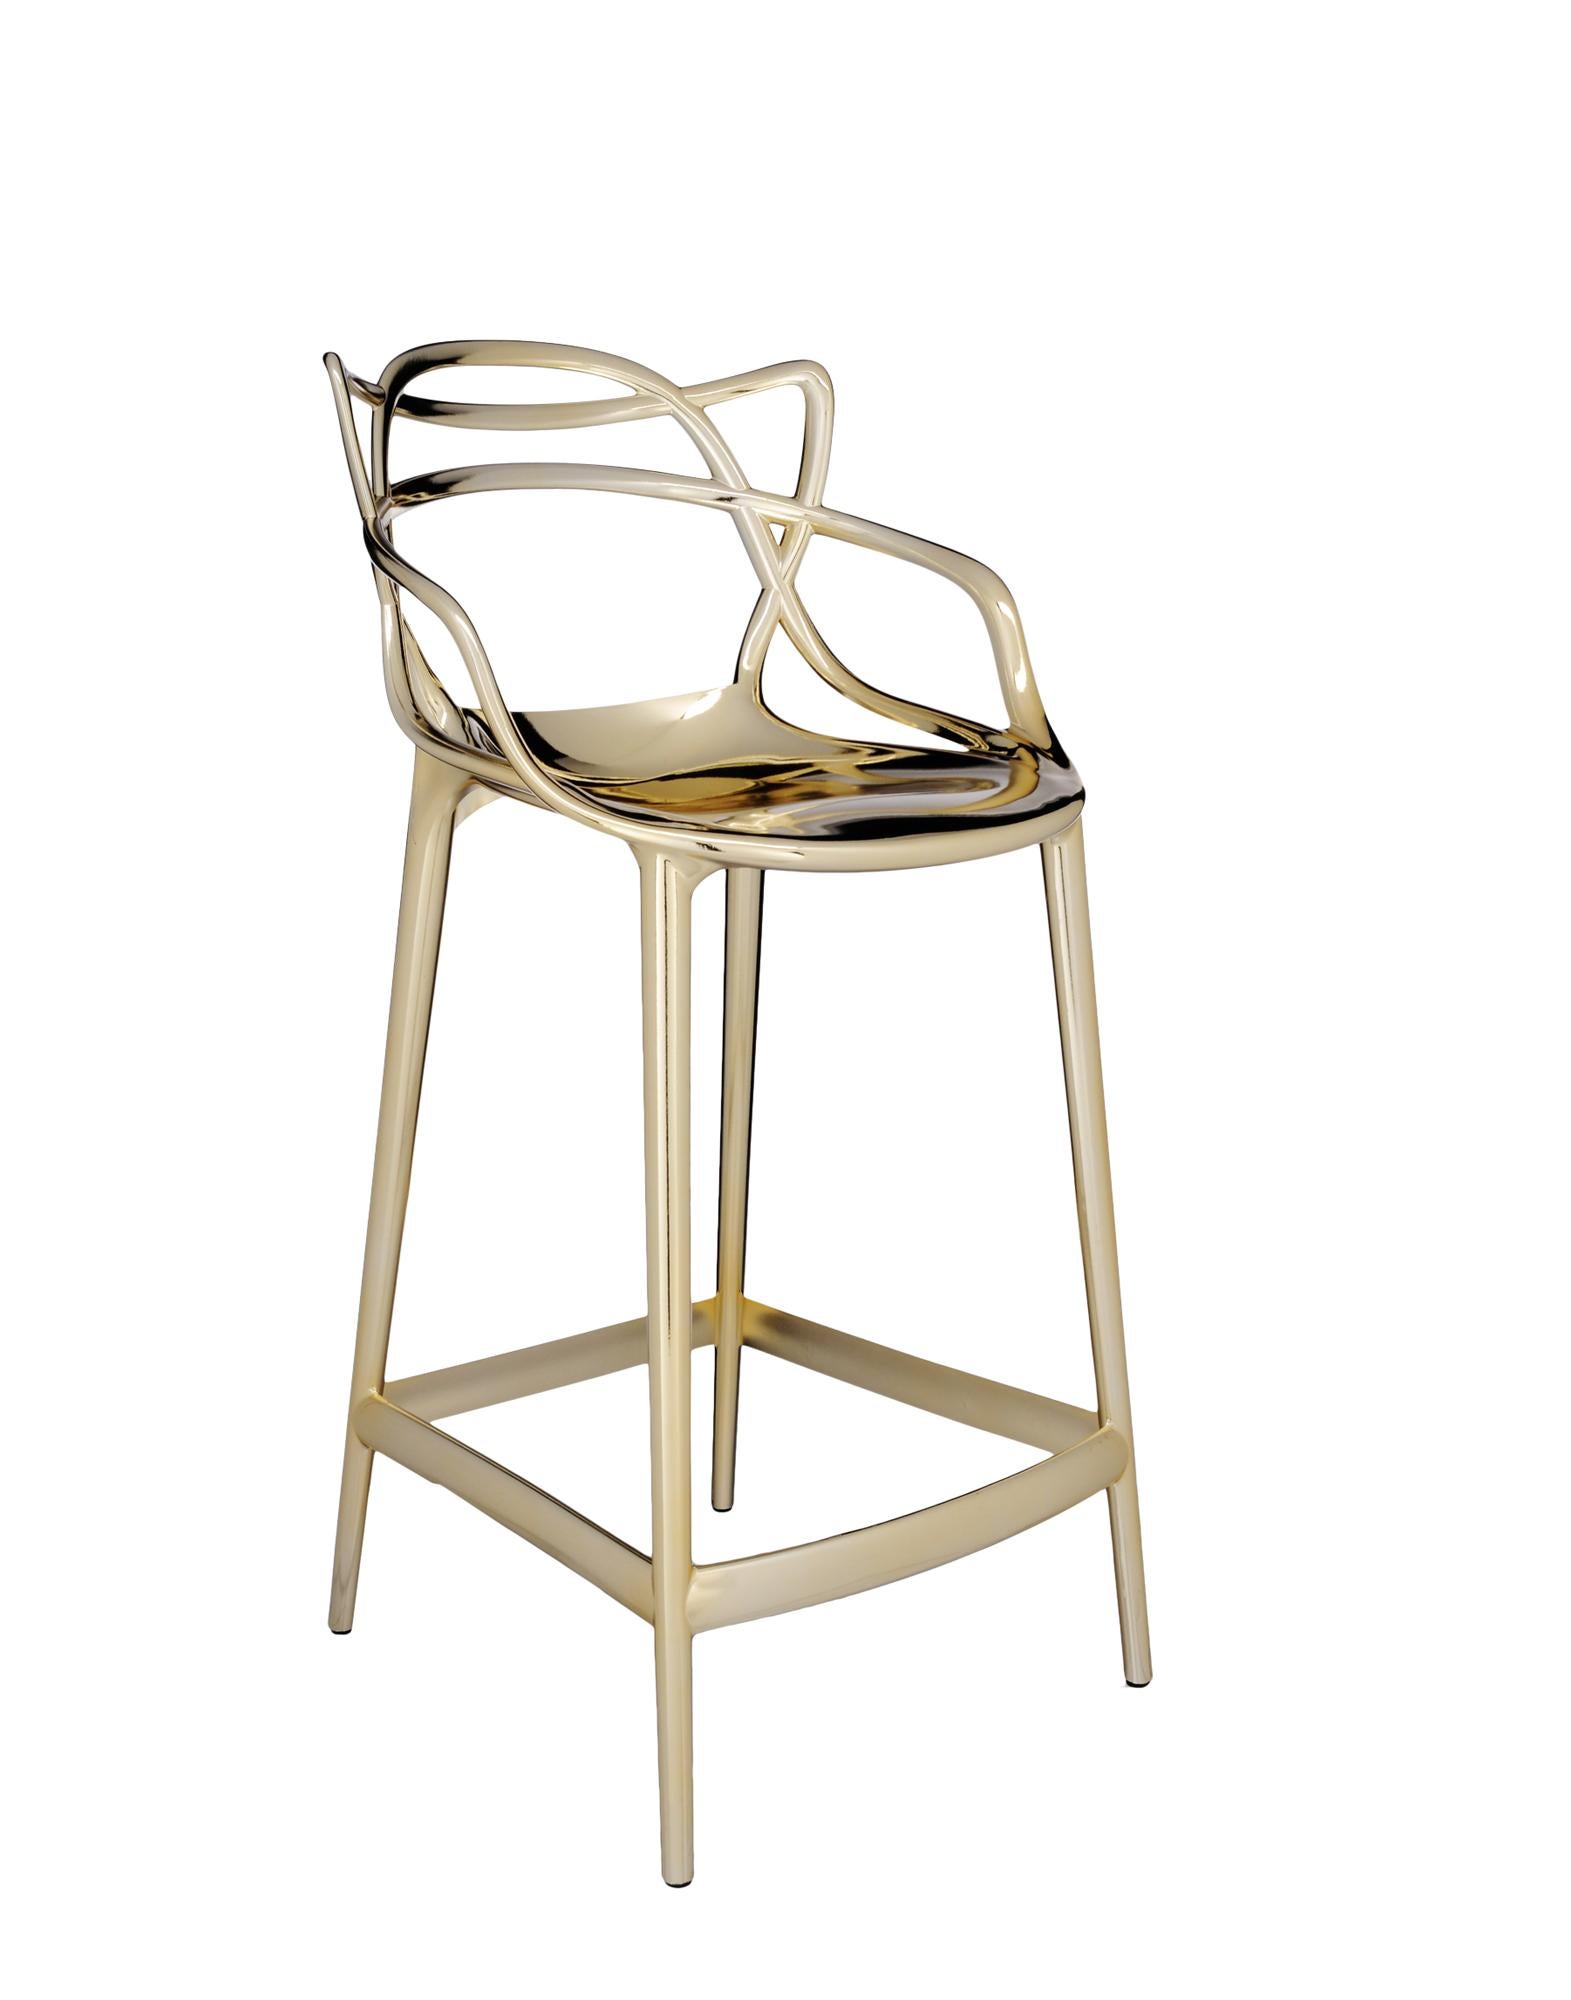 Kartell propose également une version tabouret de la chaise Masters, lauréate du Good Design Award 2010 et du Red Dot Award 2013, et best-seller mondial. Les pieds sont allongés et l'assise rétrécie, mais l'aspect graphique incomparable du cadre,